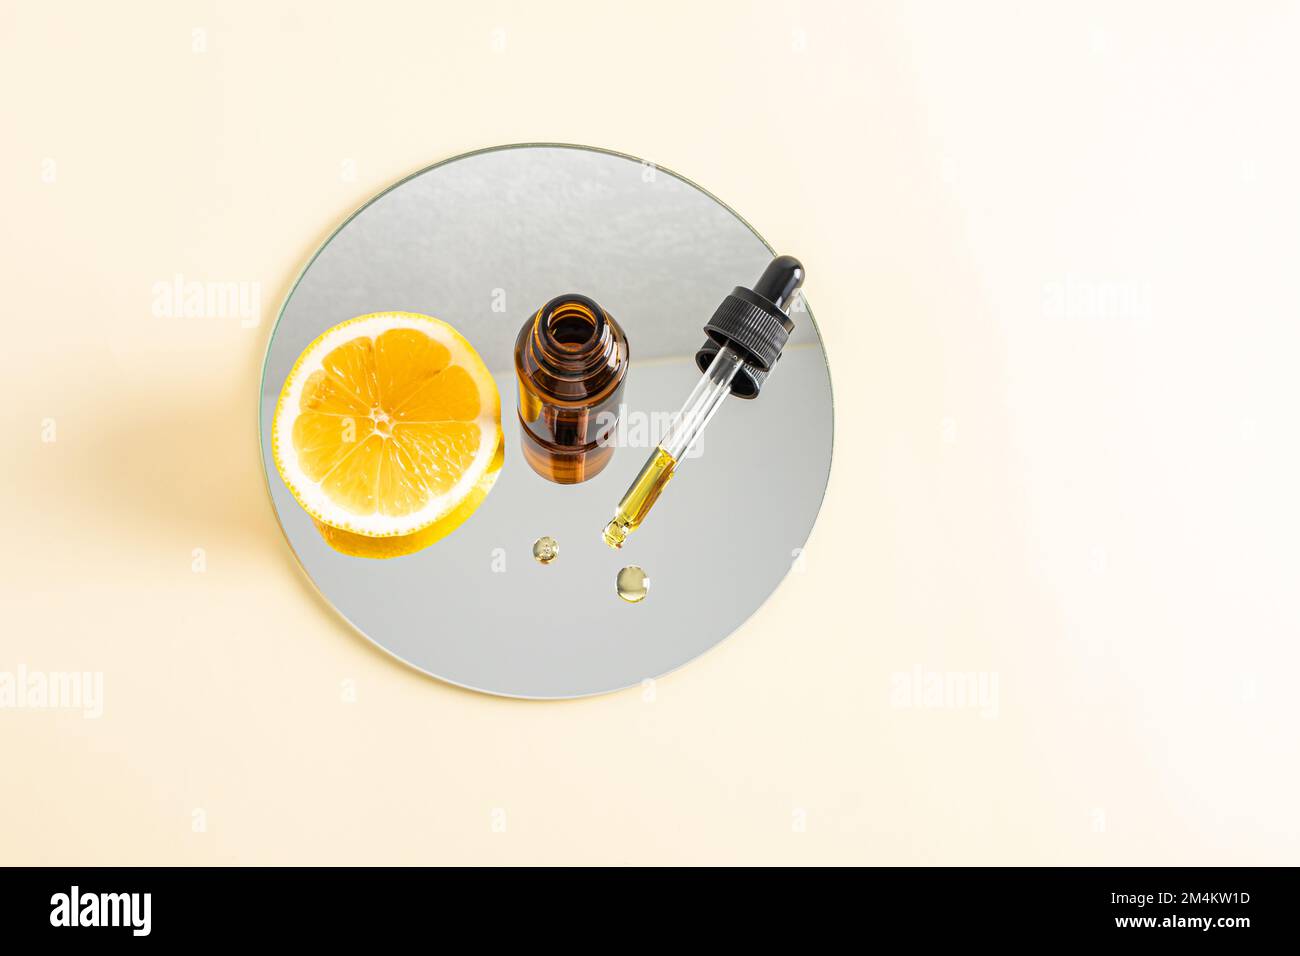 Die Befeuchtung des Serums mit Peptiden auf der Basis von ätherischem Zitronenöl zur Erhöhung der Hautelastizität, mit Vitamin C steht auf einem runden Kosmetikspiegel. Draufsicht Stockfoto